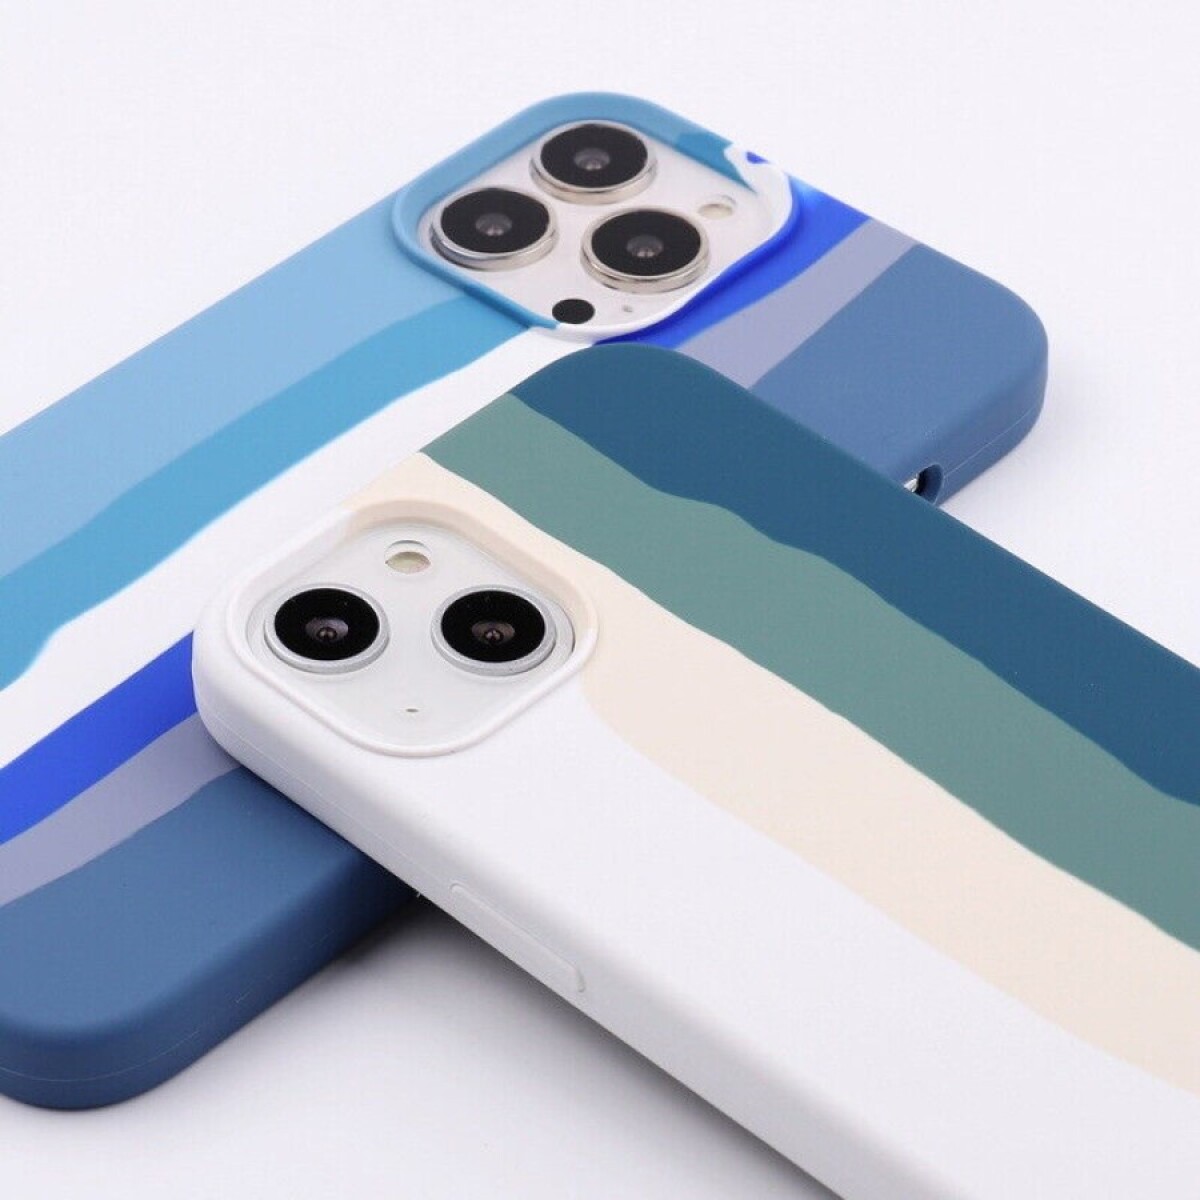 Protector case de silicona iphone 13 diseño arcoiris Blanco